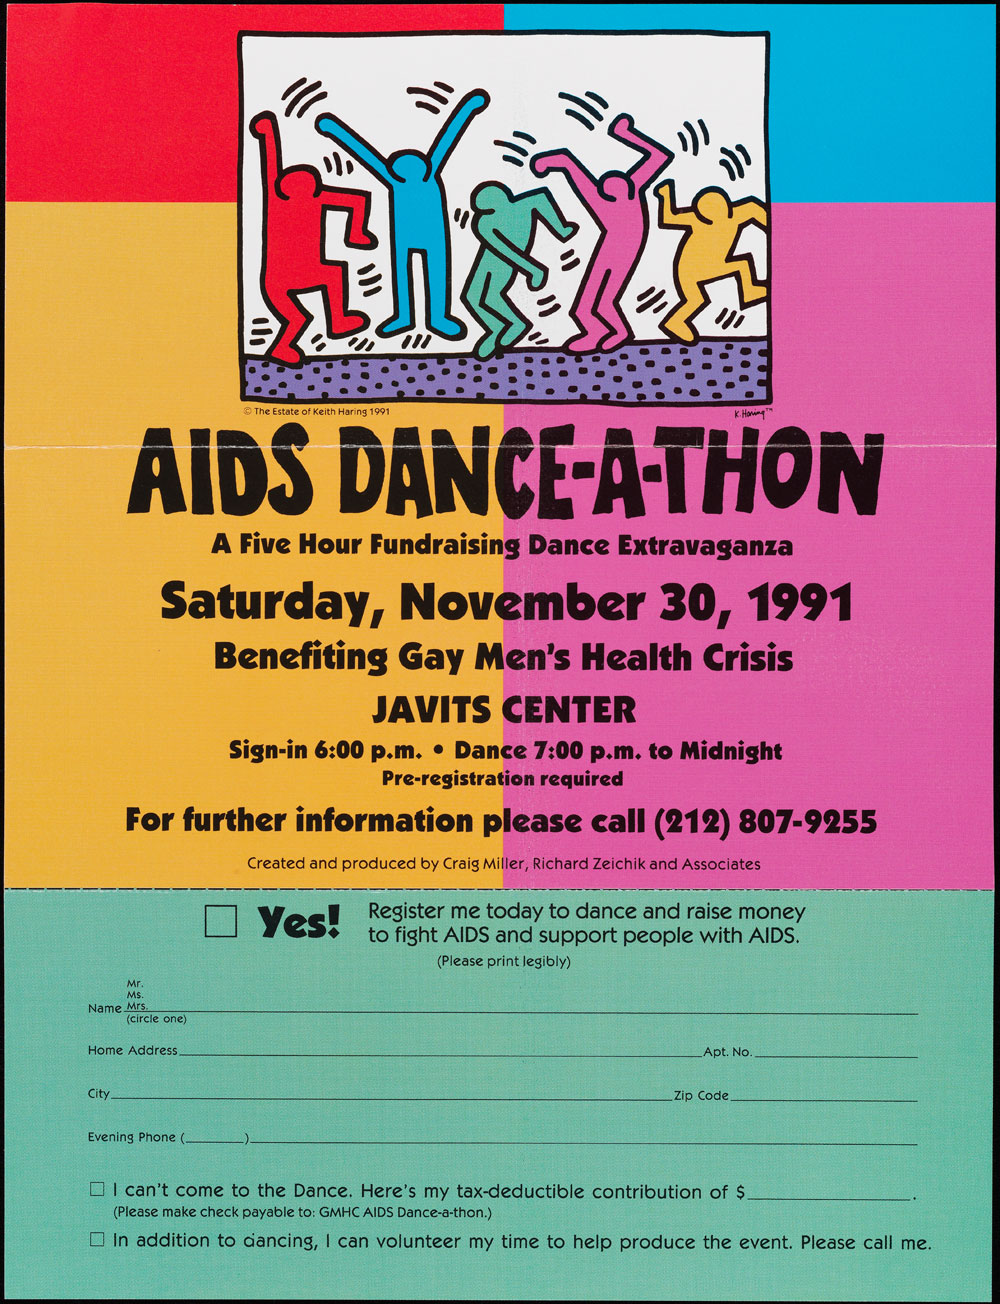 Folheto anunciando um “AIDS Dance-A-thon” em novembro de 1991. O pôster é colorido e inclui um formulário de inscrição